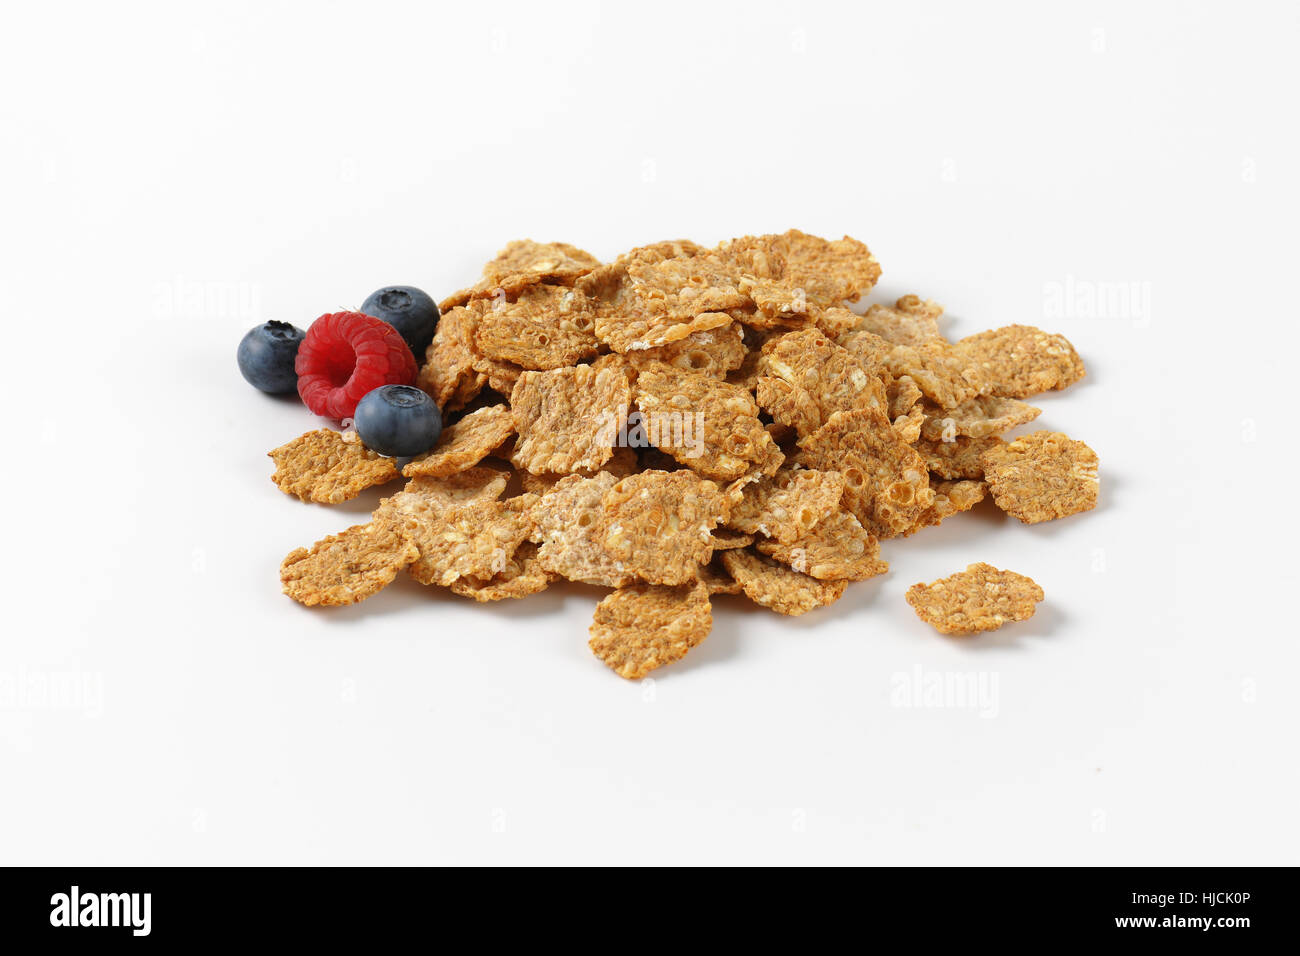 Haufen von Frühstück Getreide und Berry Obst auf weißem Hintergrund Stockfoto